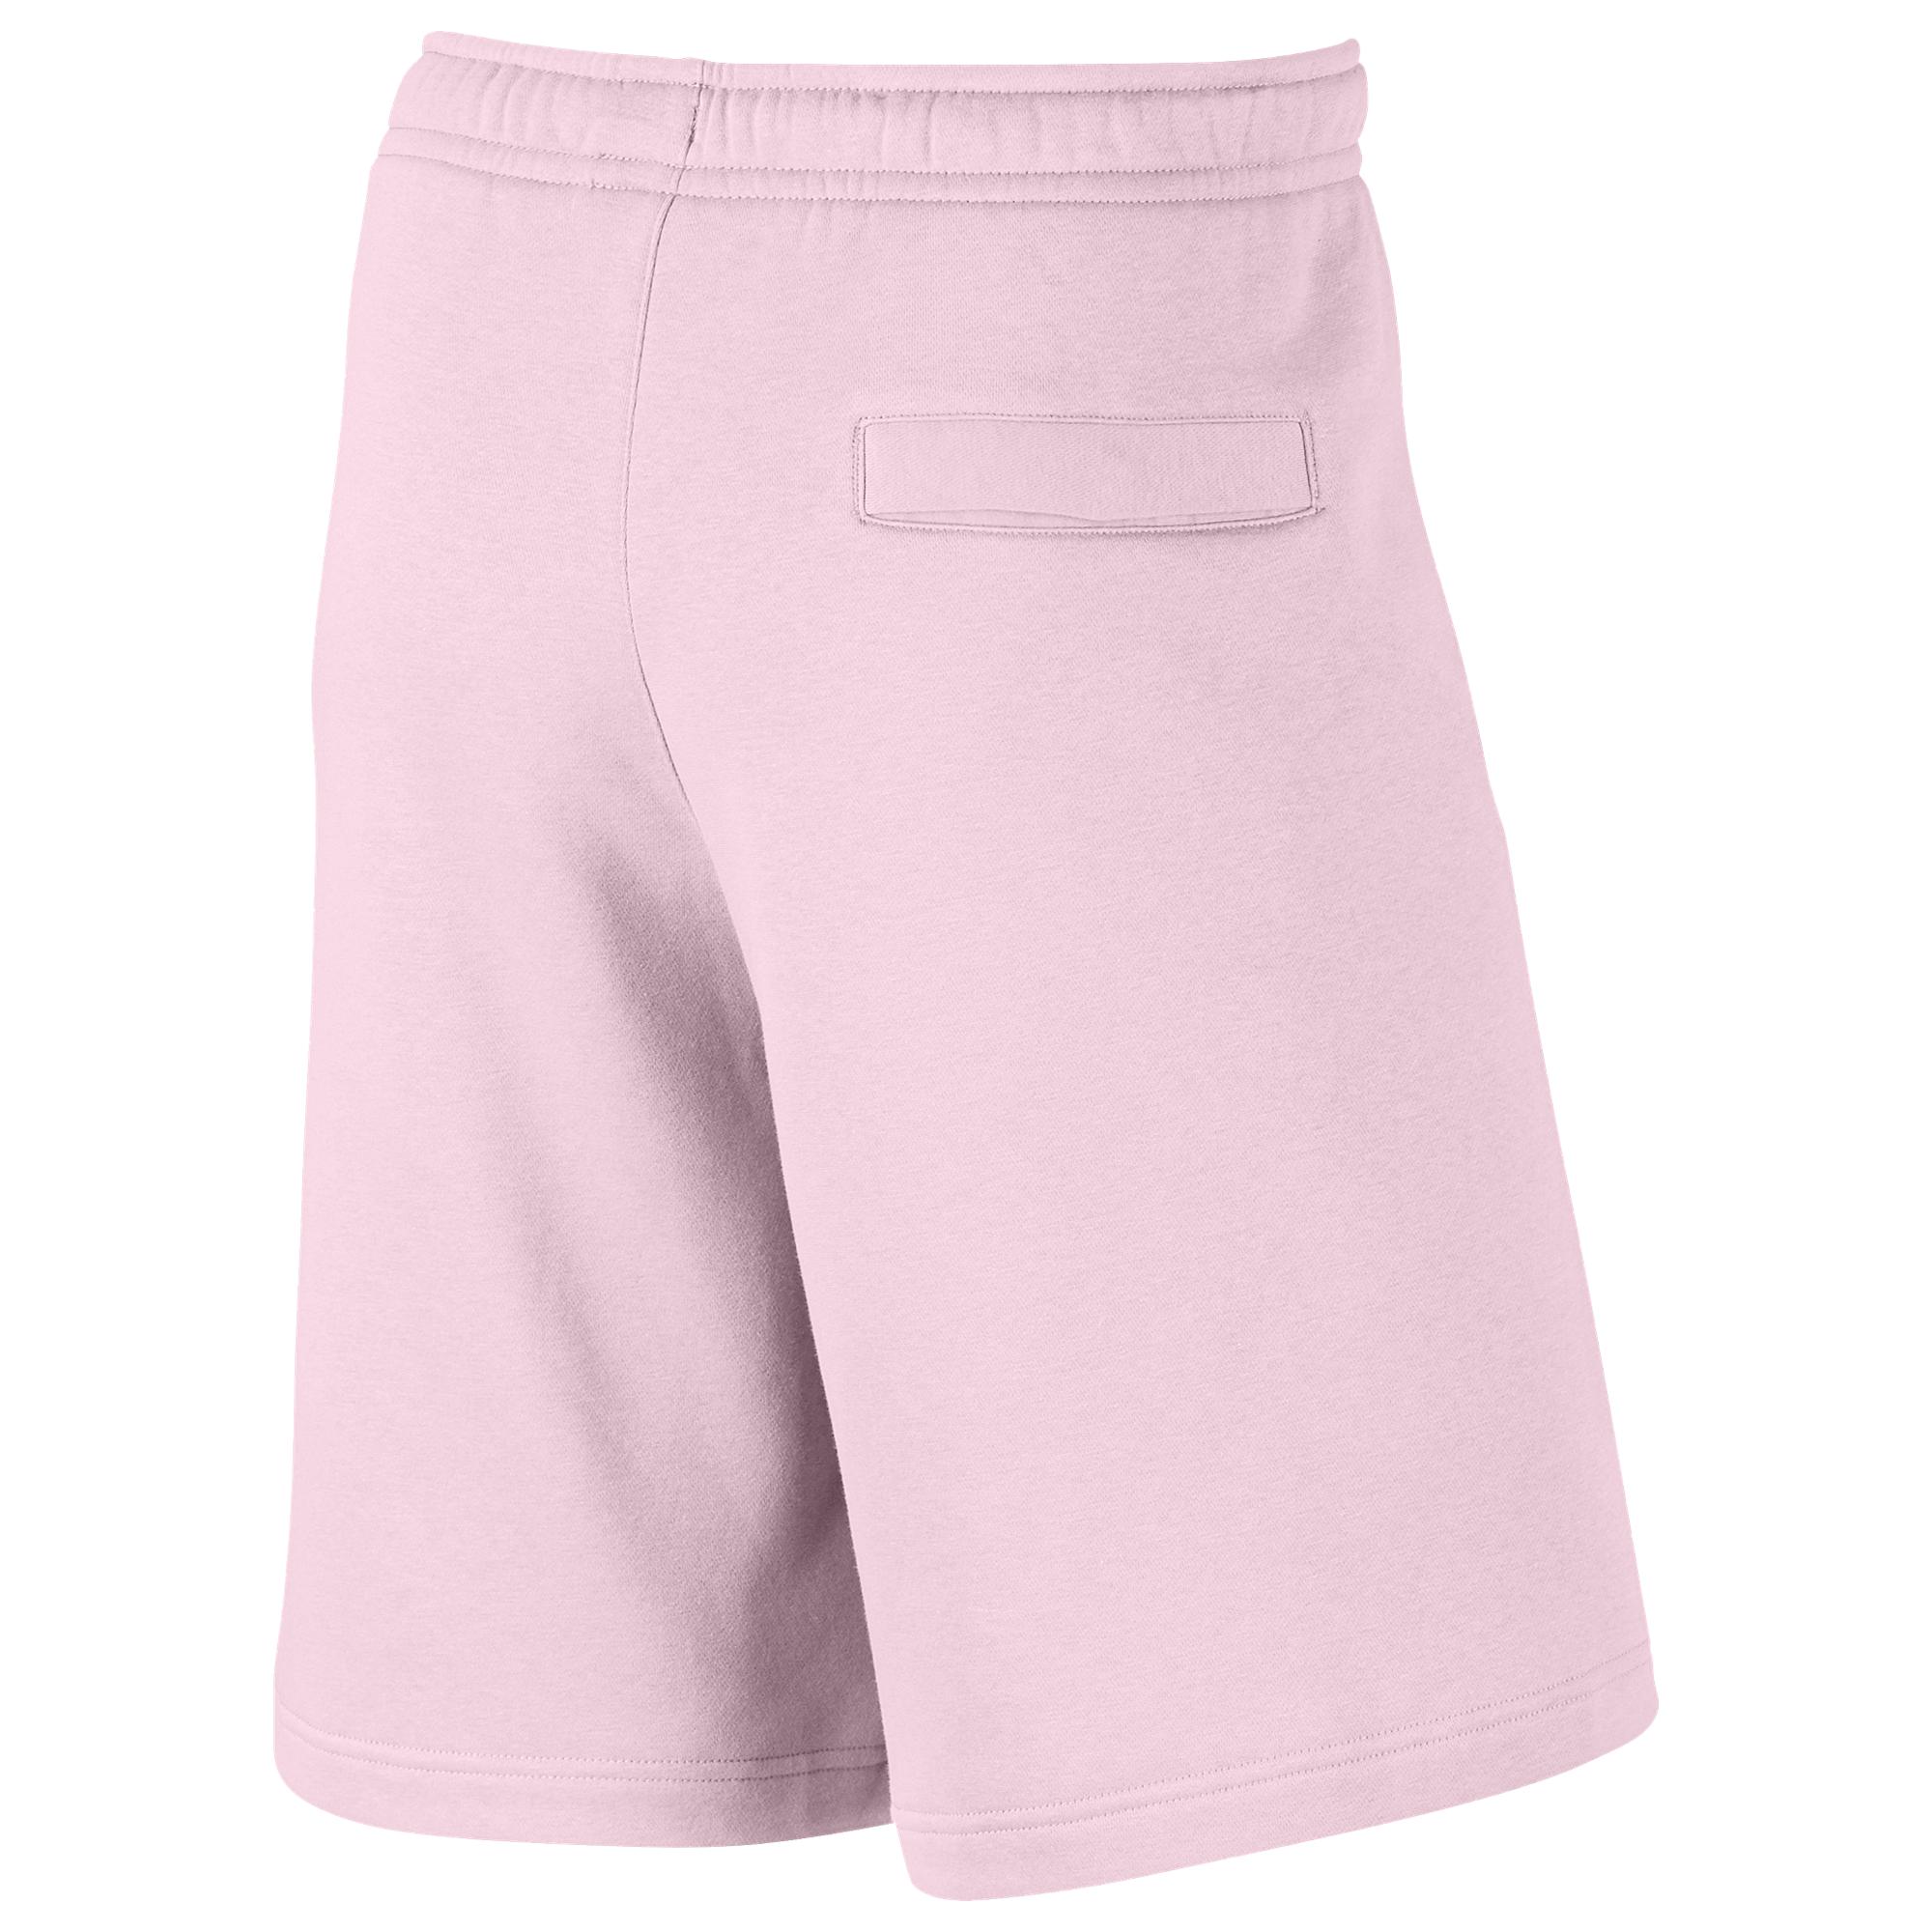 pink nike sweat shorts mens